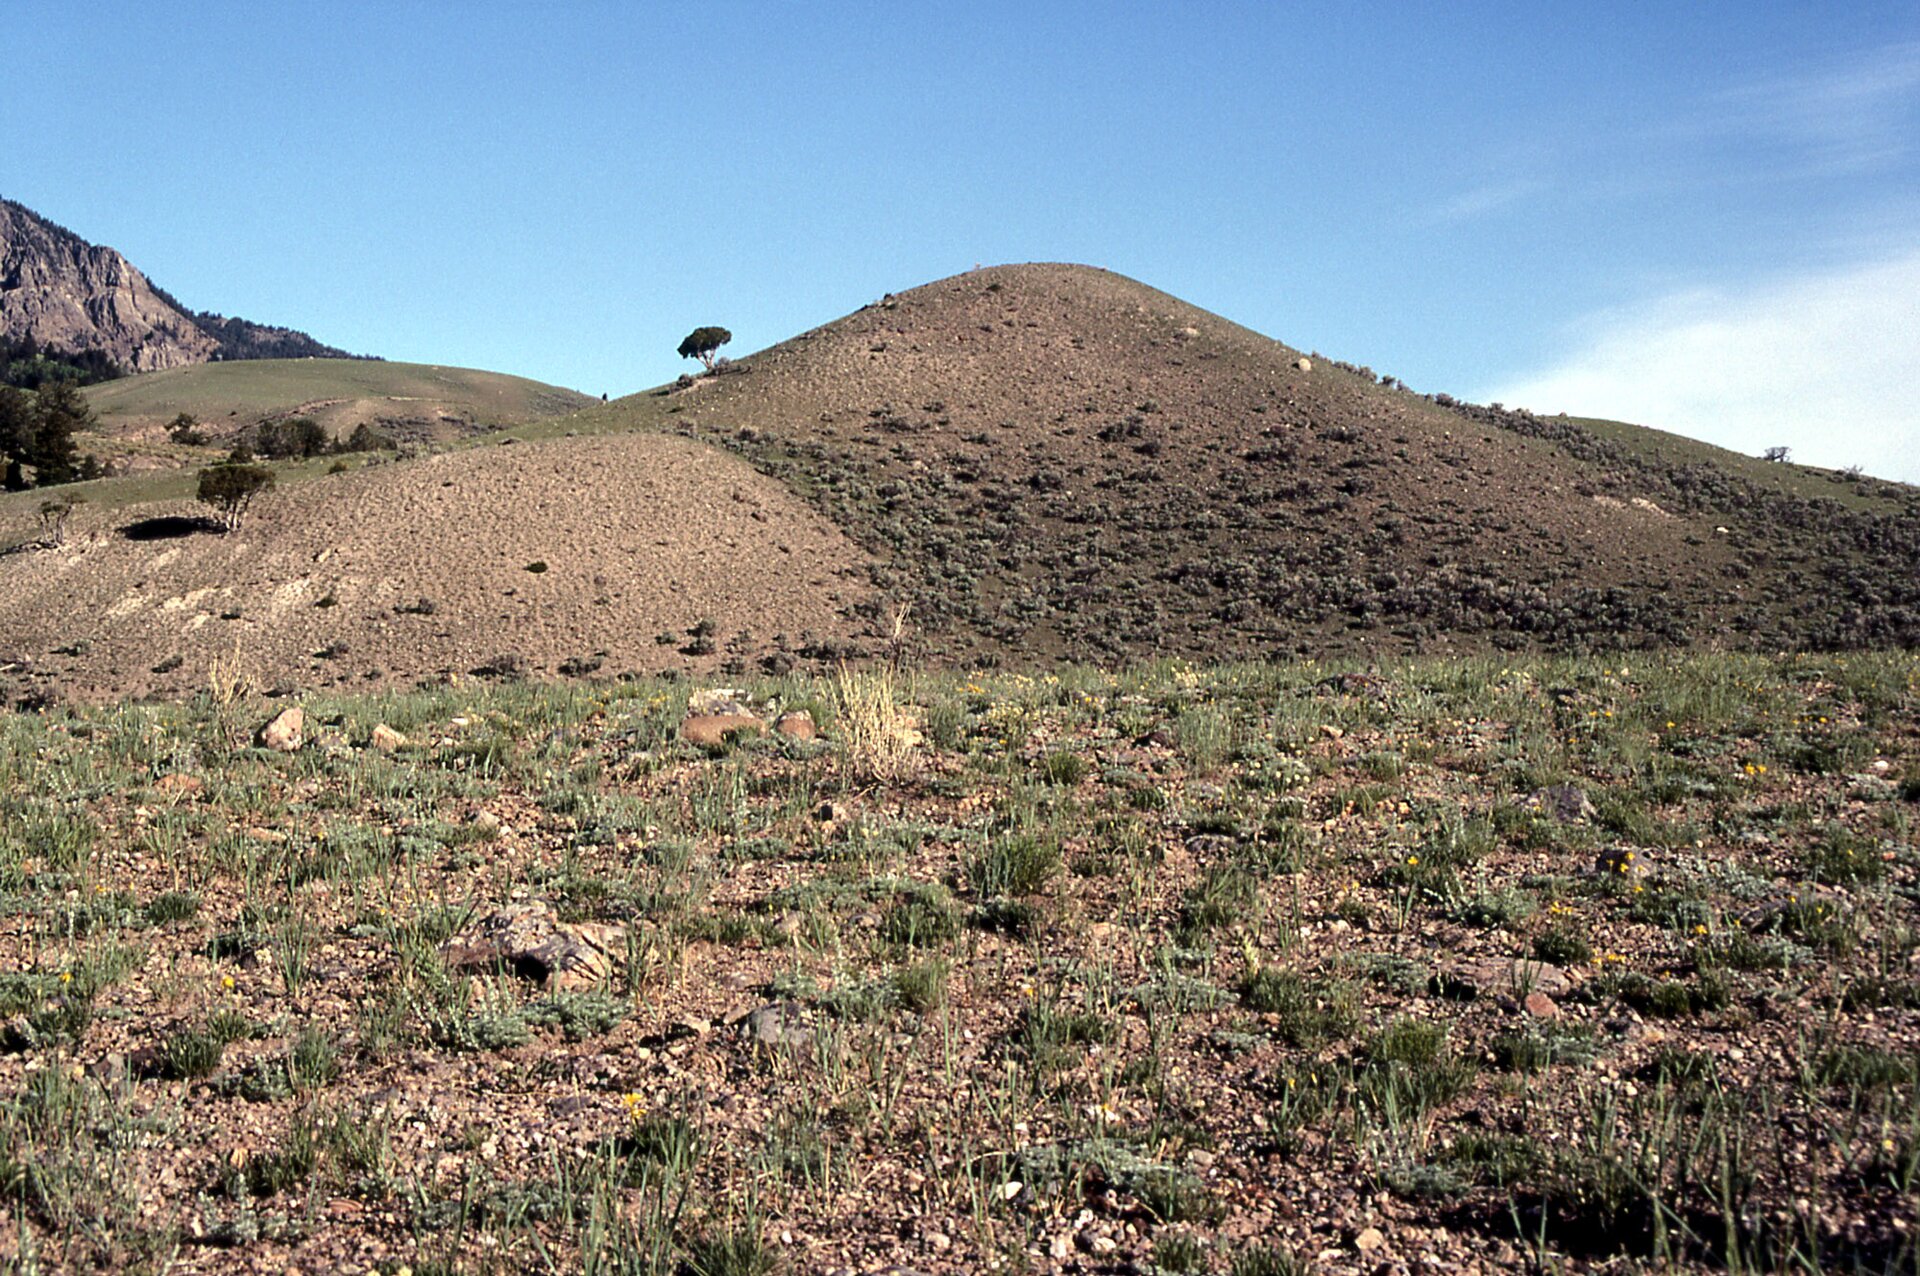 Zdjęcie B przedstawia pagórek, przypominający kształtem stożek. Ma łagodnie nachylone zbocza. Przed pagórkiem jest płaski teren, w tle są wzniesienia.  